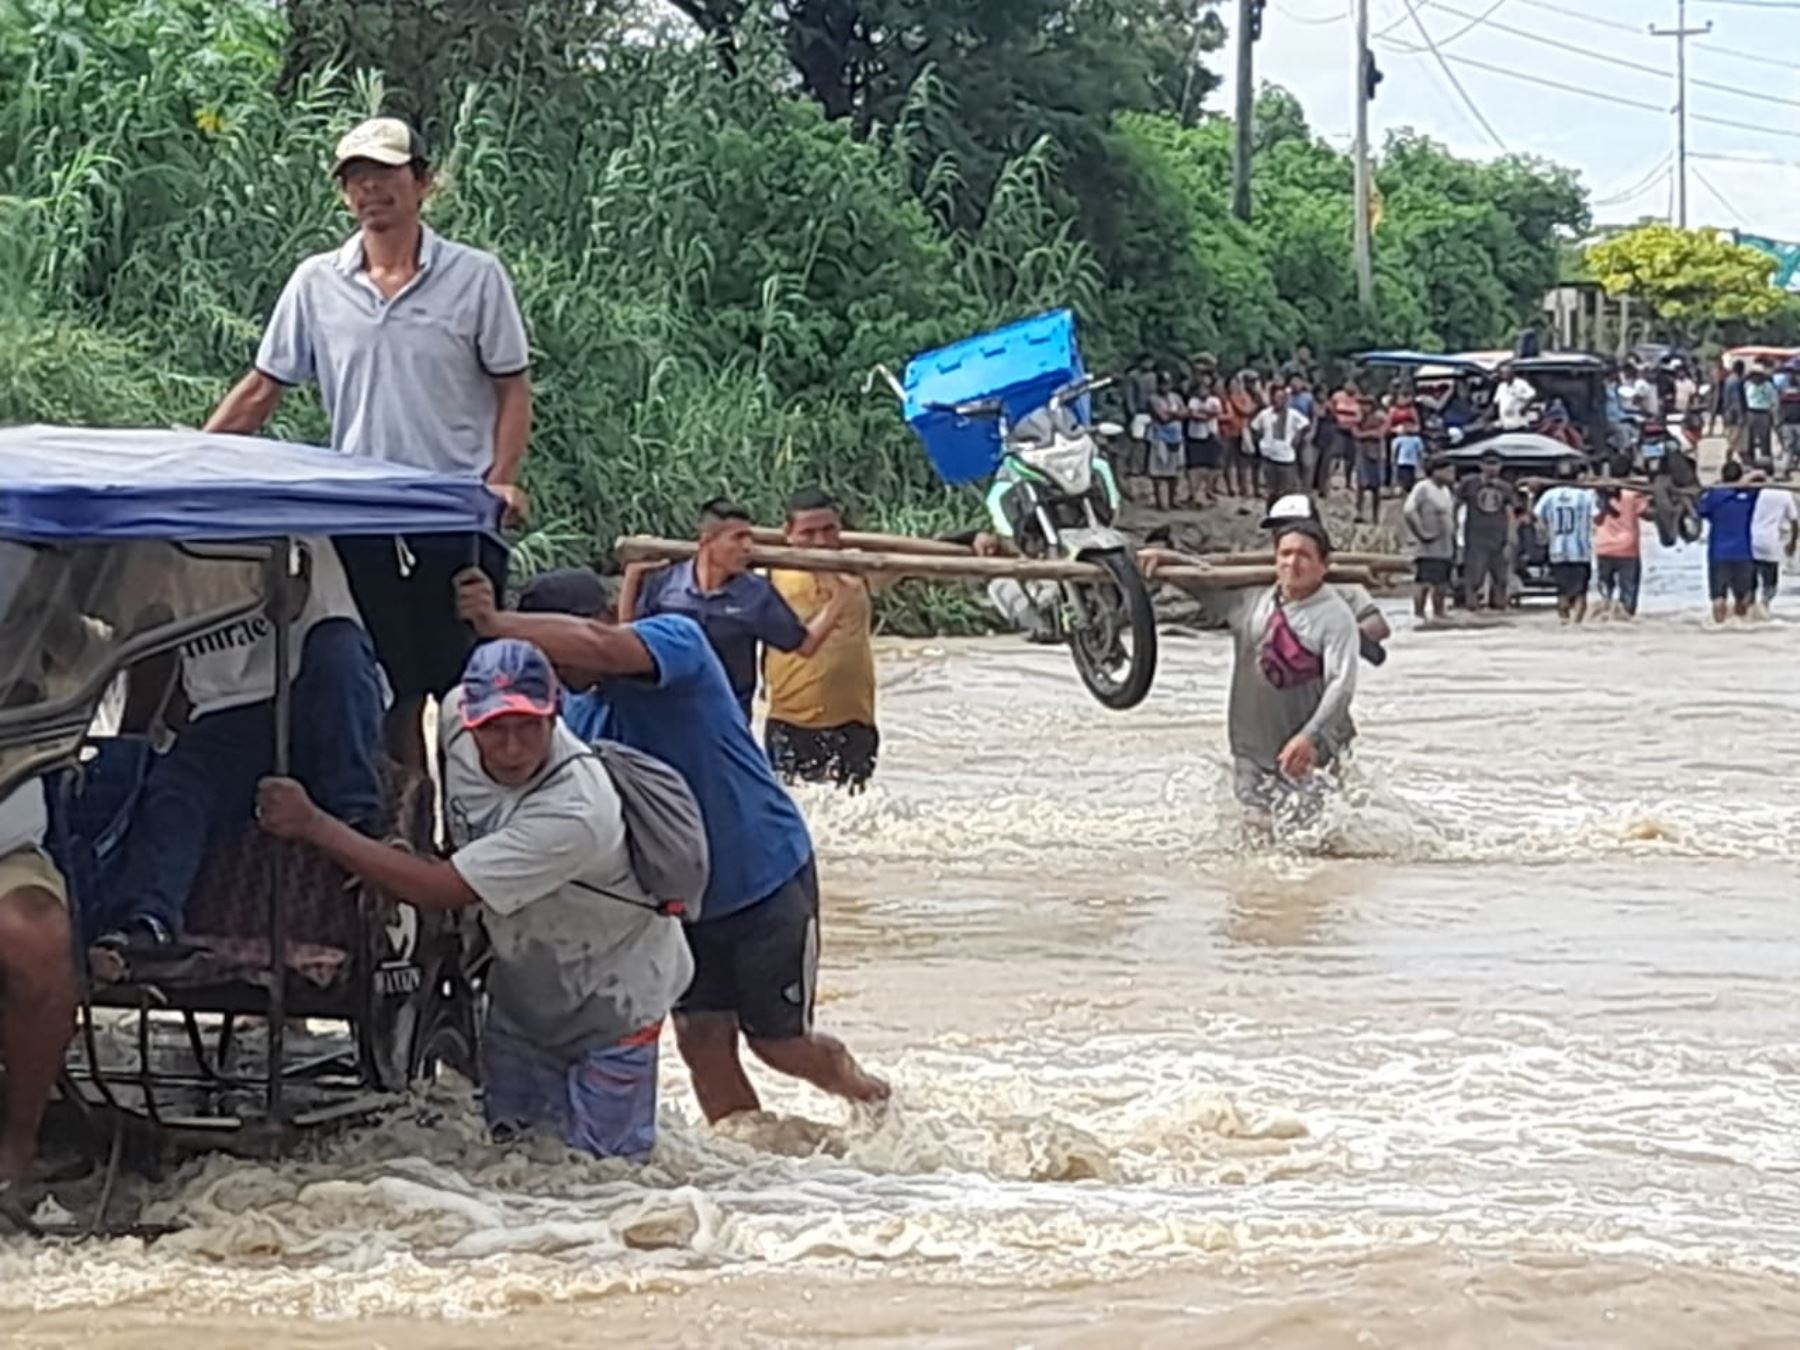 Pobladores de Chulucanas arriesgan sus vidas al cruzar el badén Batanes que aumentó su caudal luego de la torrencial lluvia que soportó la provincia de Morropón, en Piura. Foto: Cortesía Chulucanas Noticas/Facebook